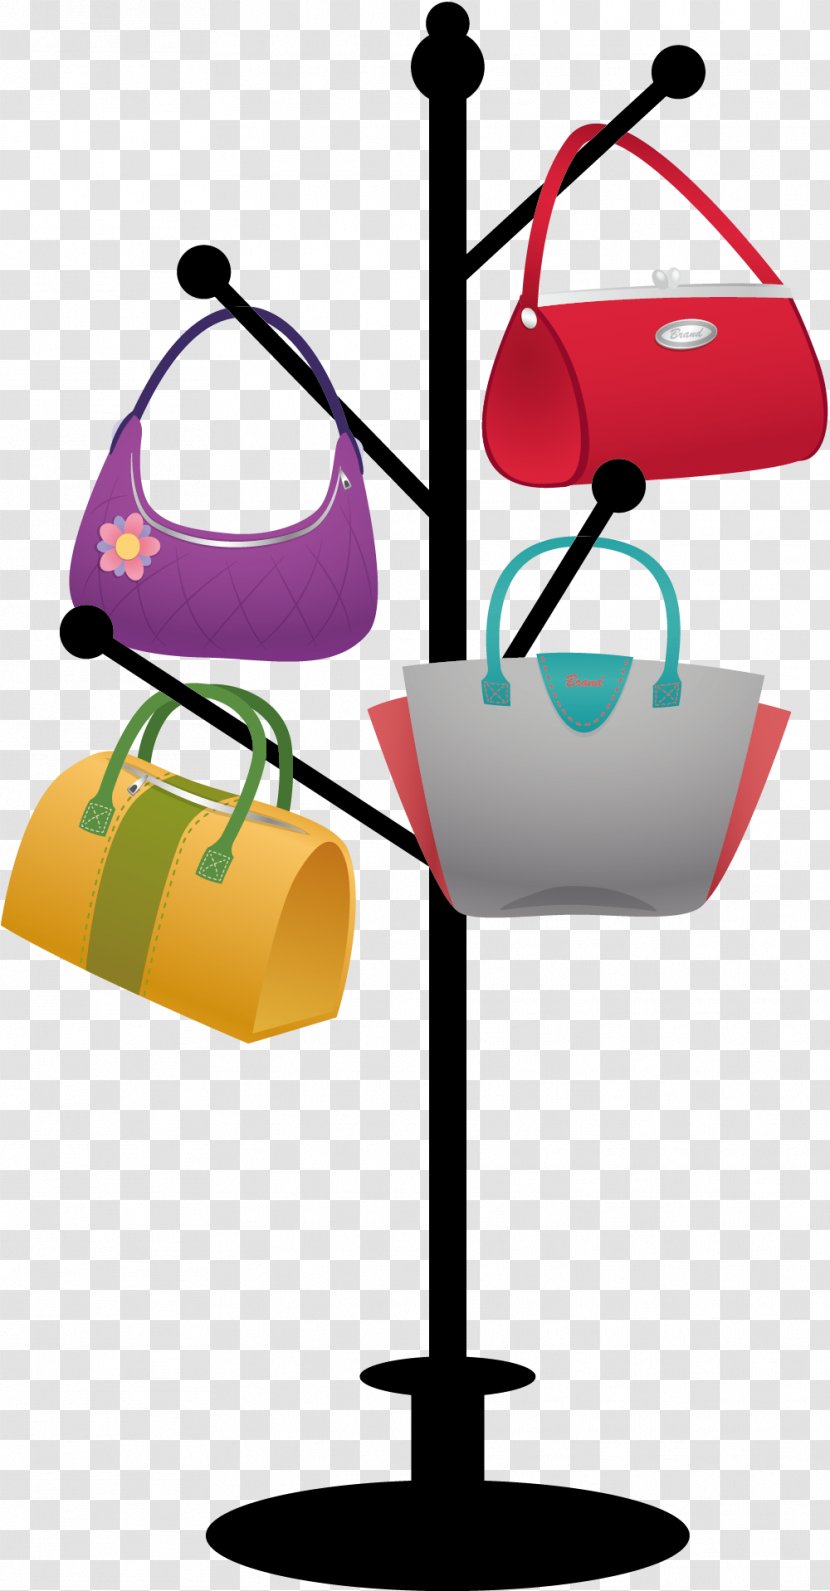 Clothes Hanger Handbag - Bag - Vector Hangers And Bags Transparent PNG